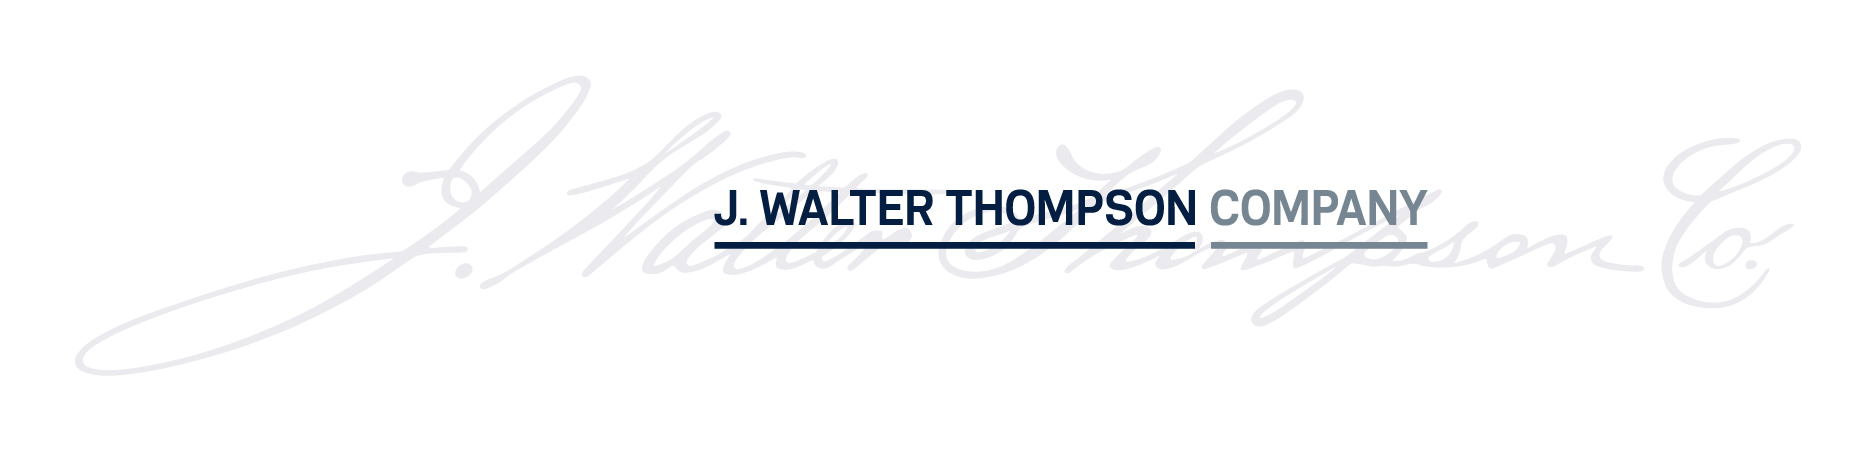 J. WALTER THOMPSON COMPANY LOGO